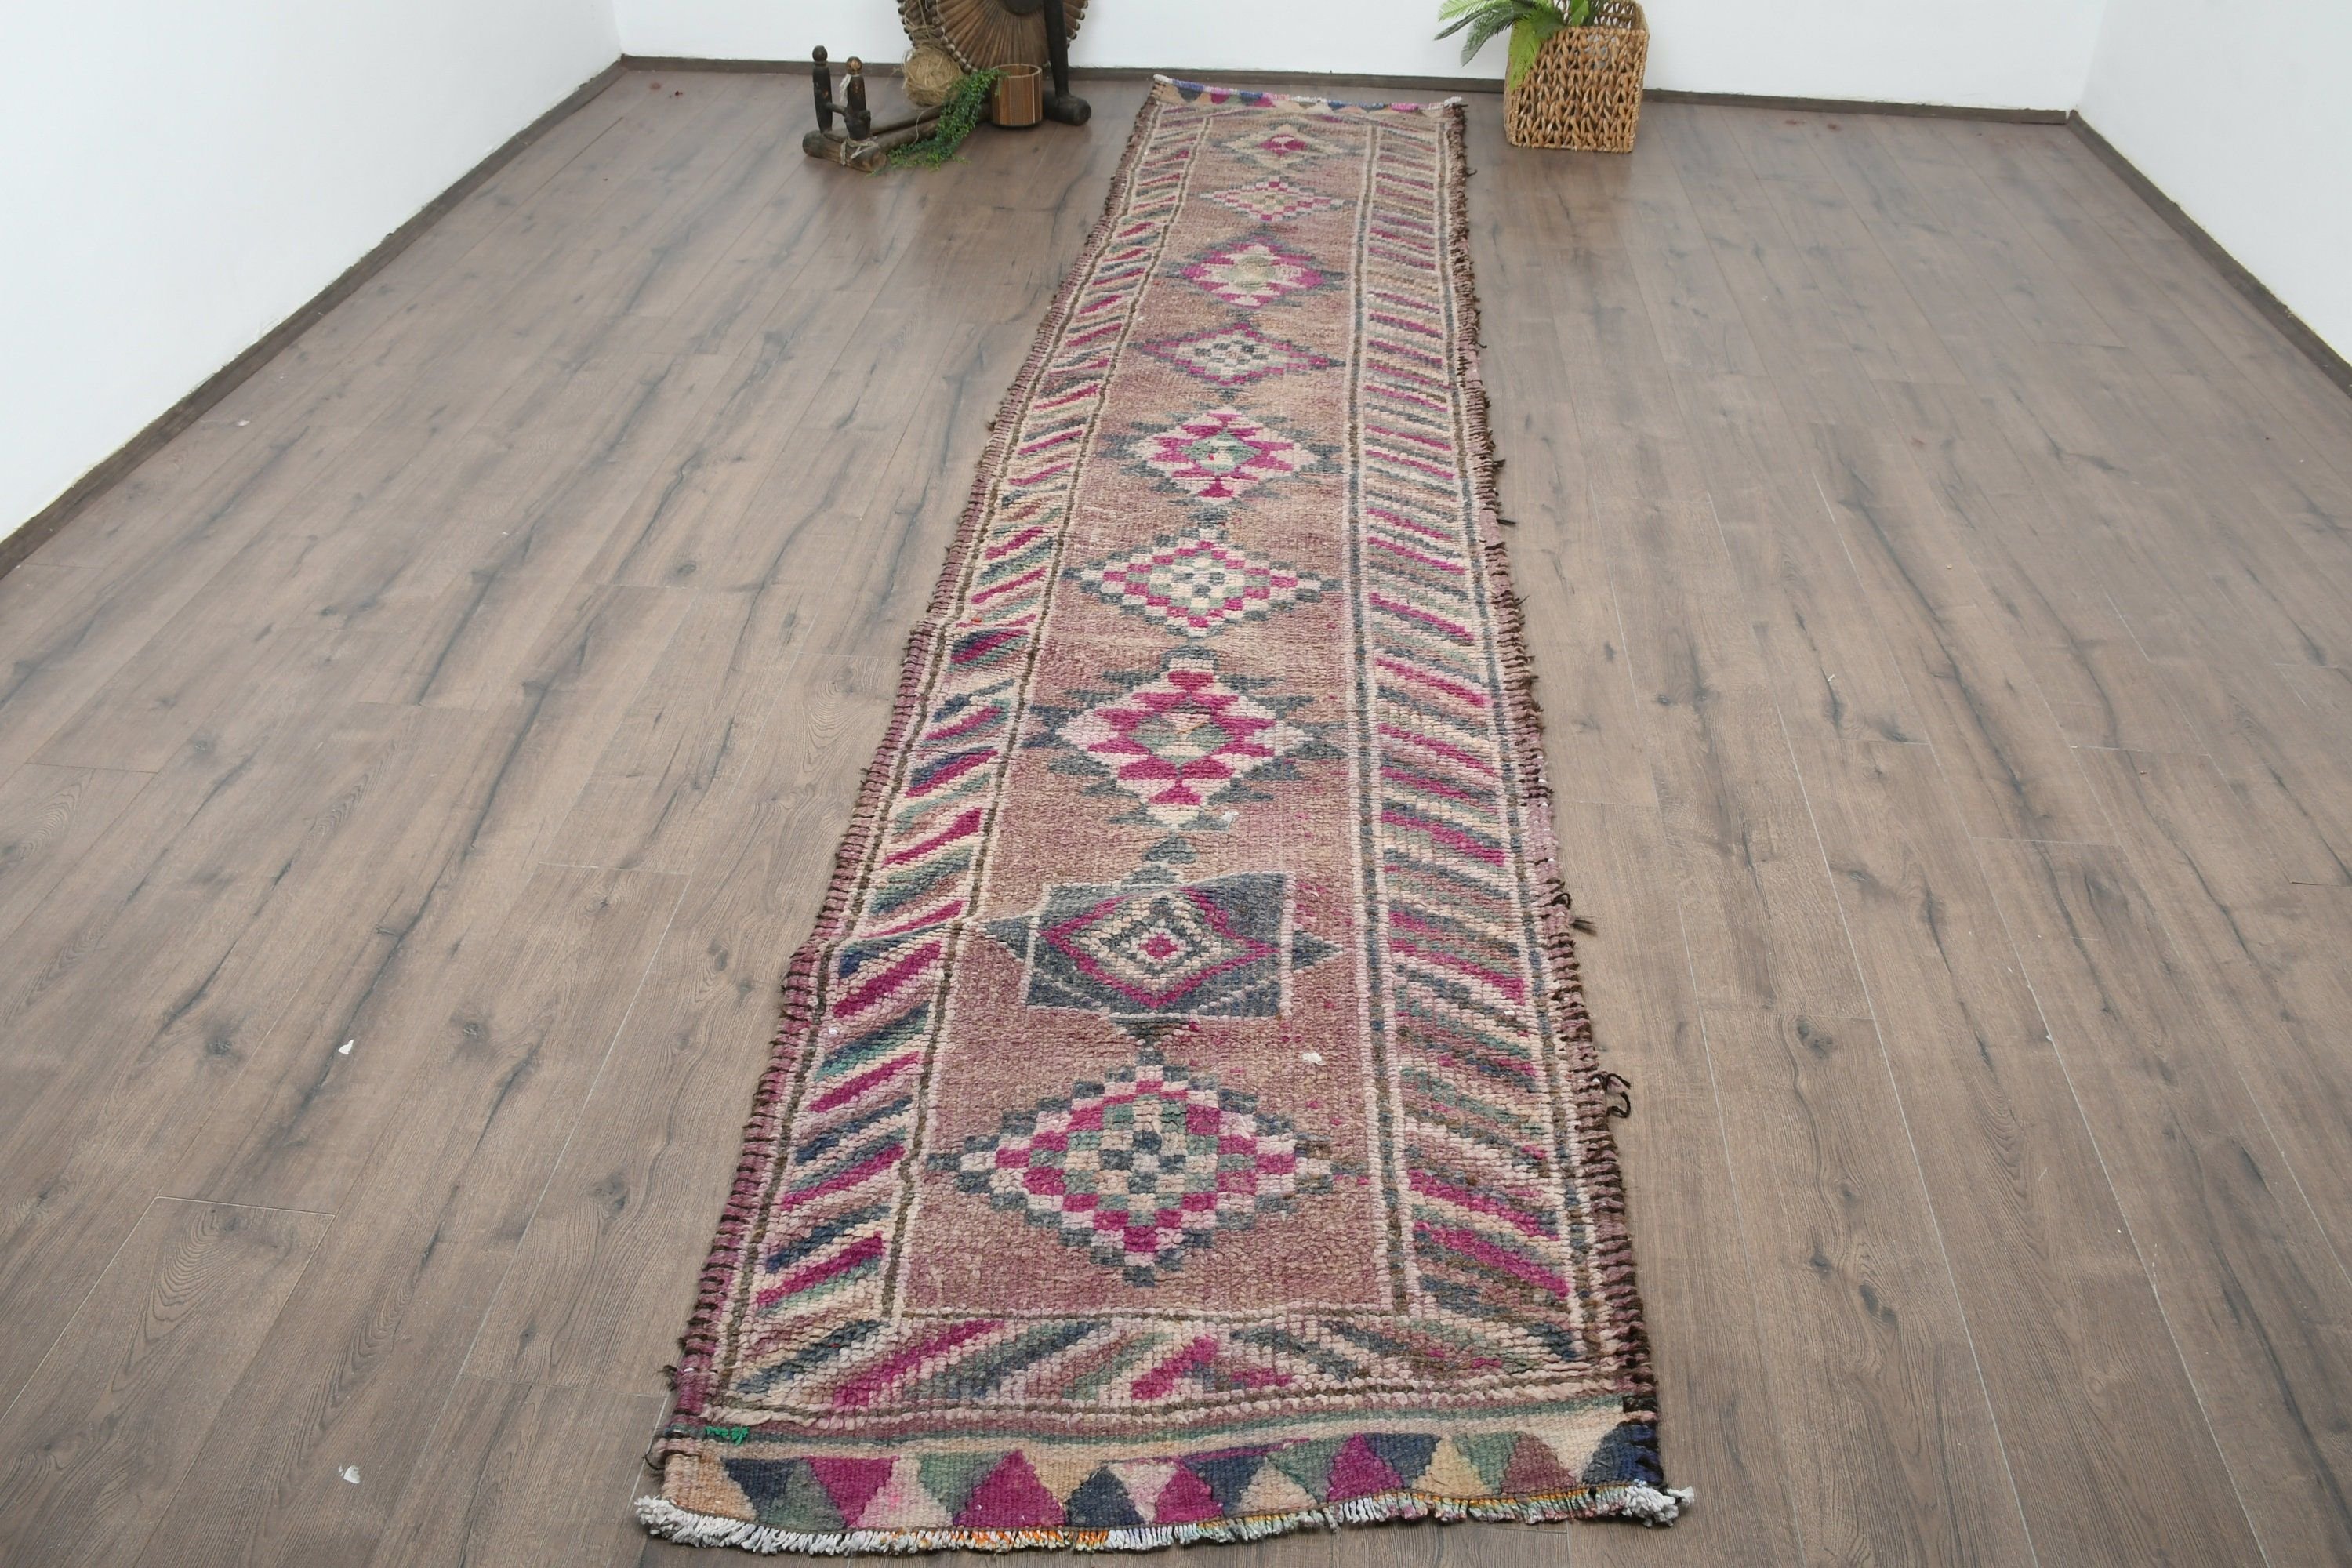 Eclectic Rug, Vintage Rug, Brown Anatolian Rugs, Floor Rugs, Stair Rug, Corridor Rugs, 2.8x13.2 ft Runner Rug, Turkish Rugs, Bedroom Rug